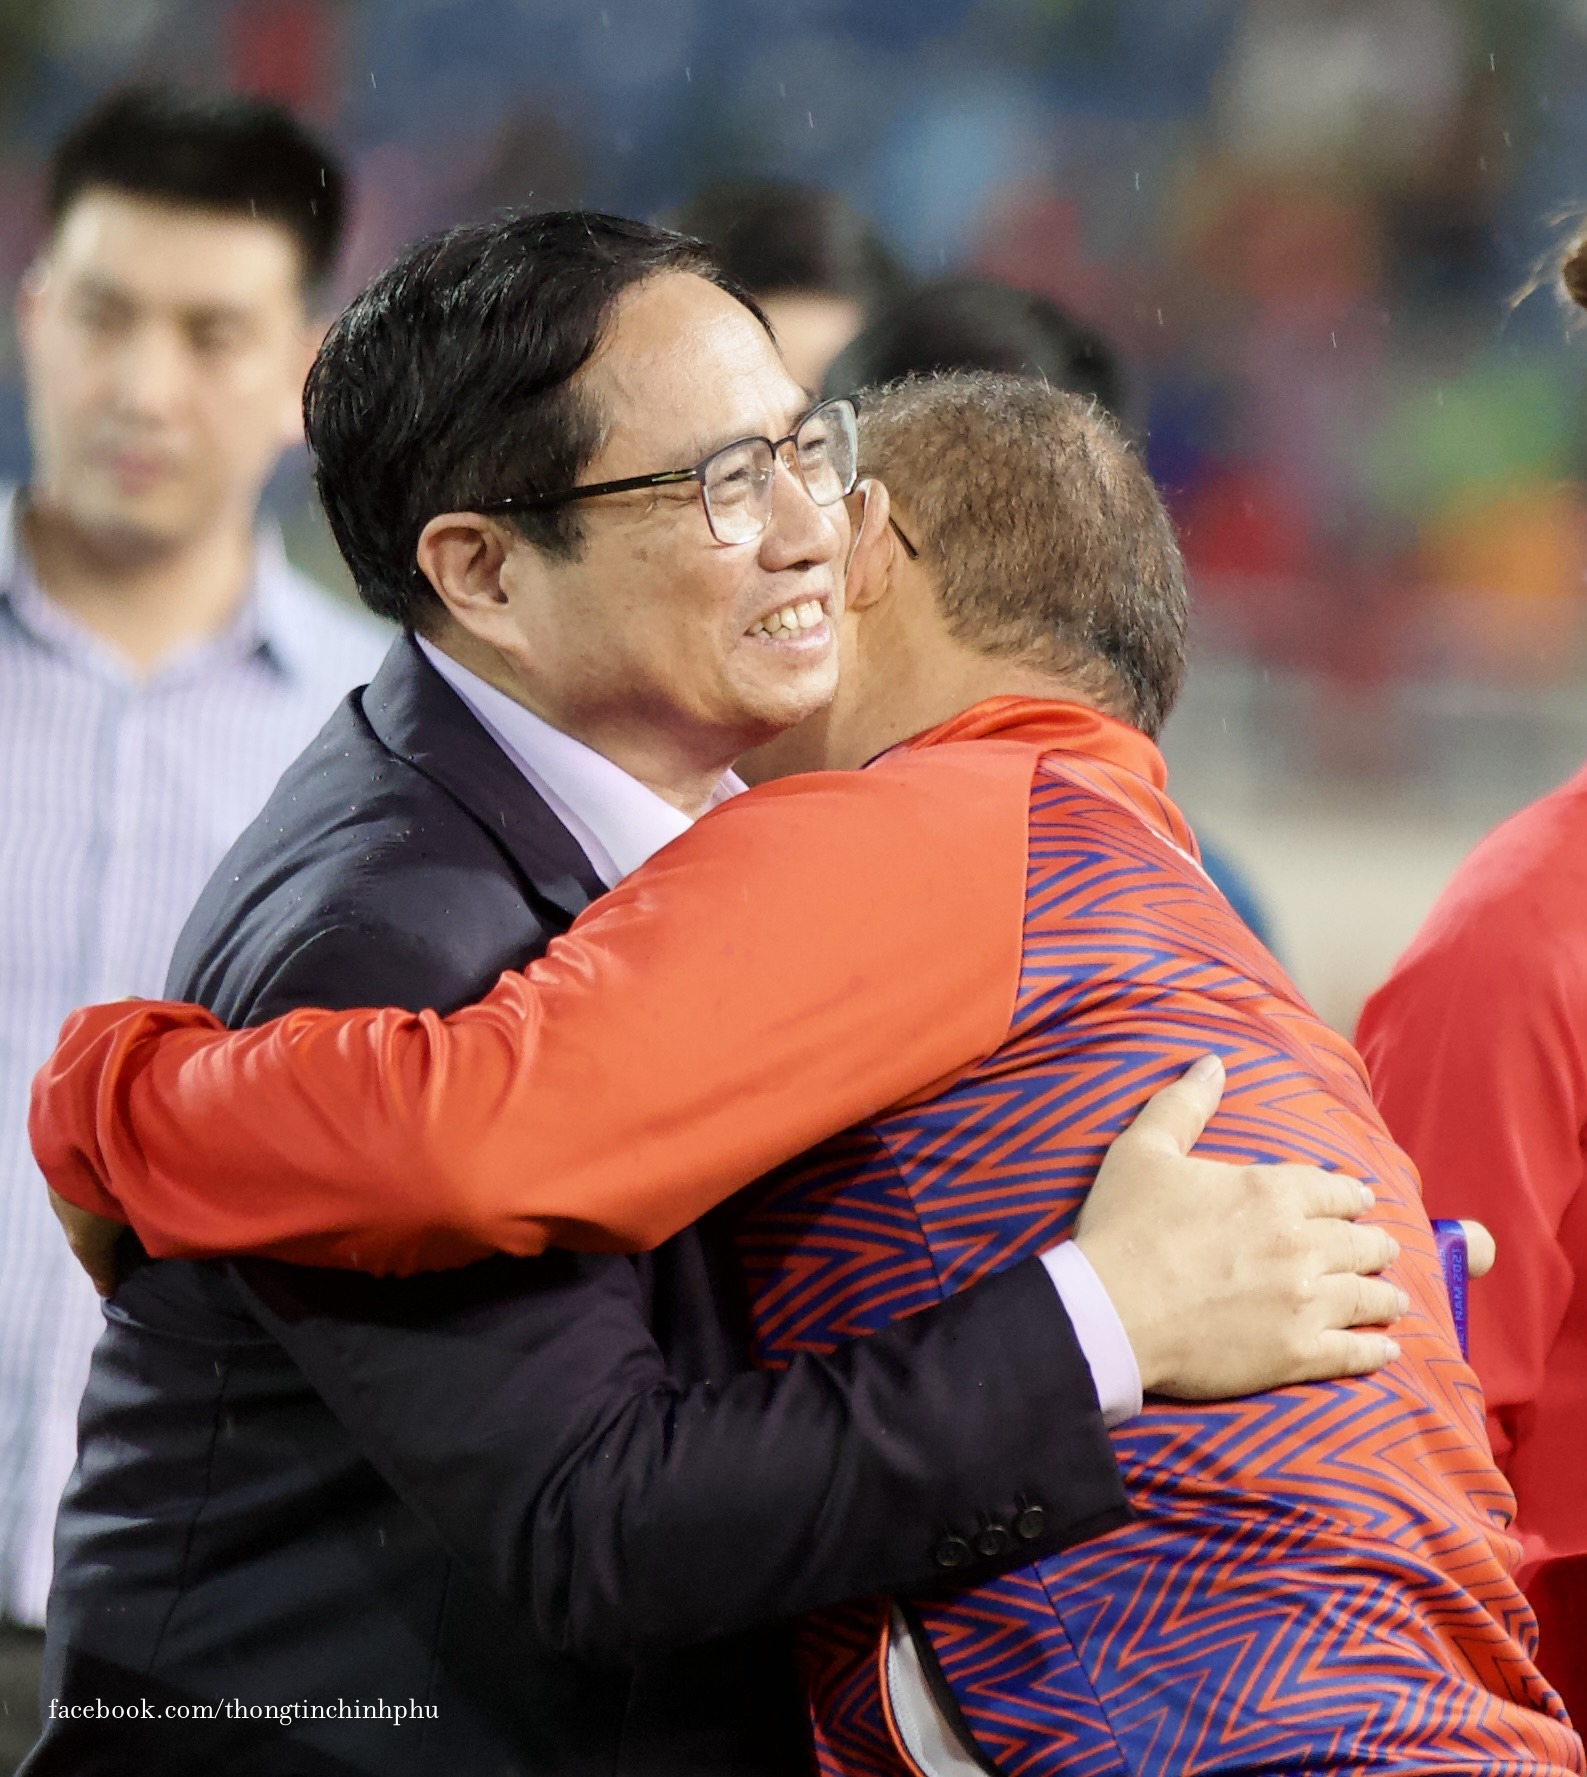 Thủ tướng Chính phủ Phạm Minh Chính chúc mừng huấn luyện viên trưởng Park Hang Seo tại sân vận động quốc gia Mỹ Đình khi đội tuyển U23 Việt Nam giành Huy chương vàng tối 22/5.